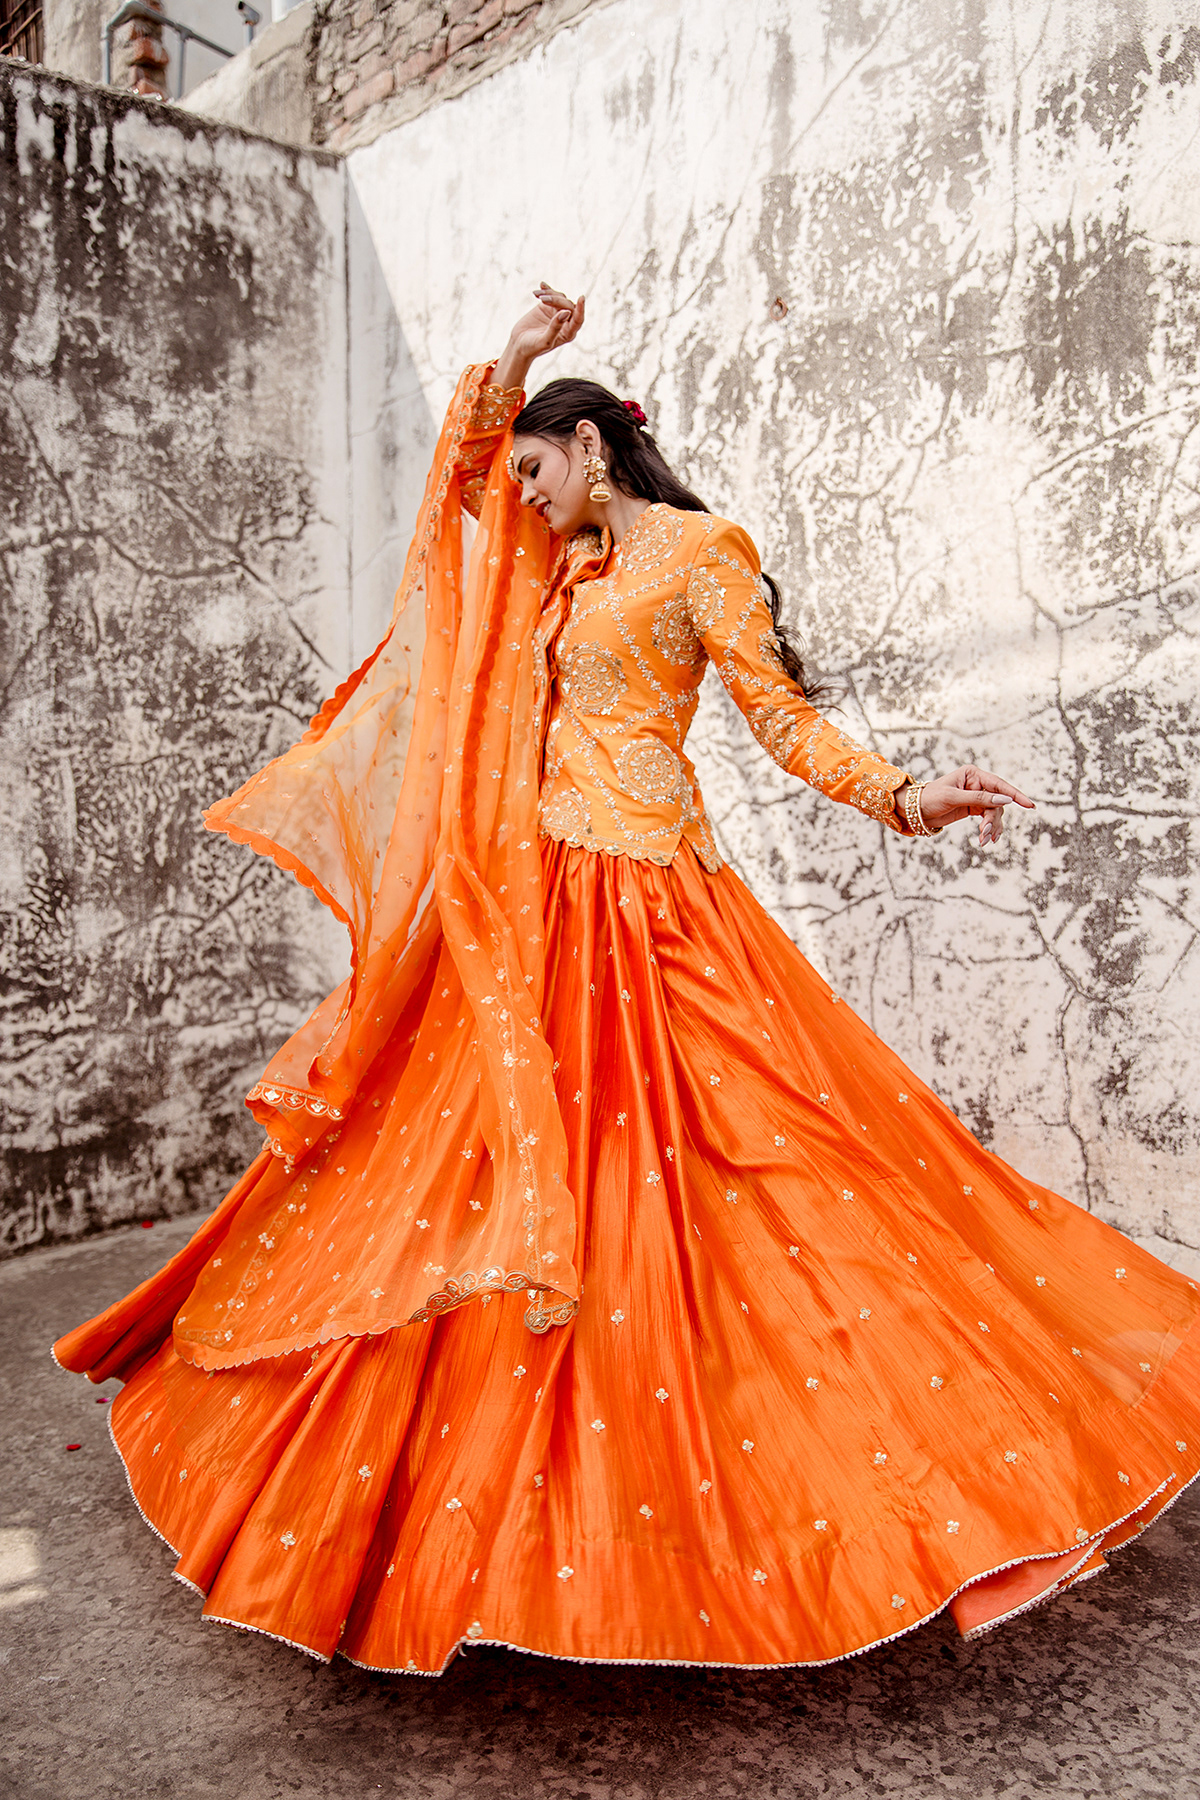 styling  Fashion  Indianfashion fashionphotography photoshoot editorial magazine Advertising  IndianStyling lehengastyling